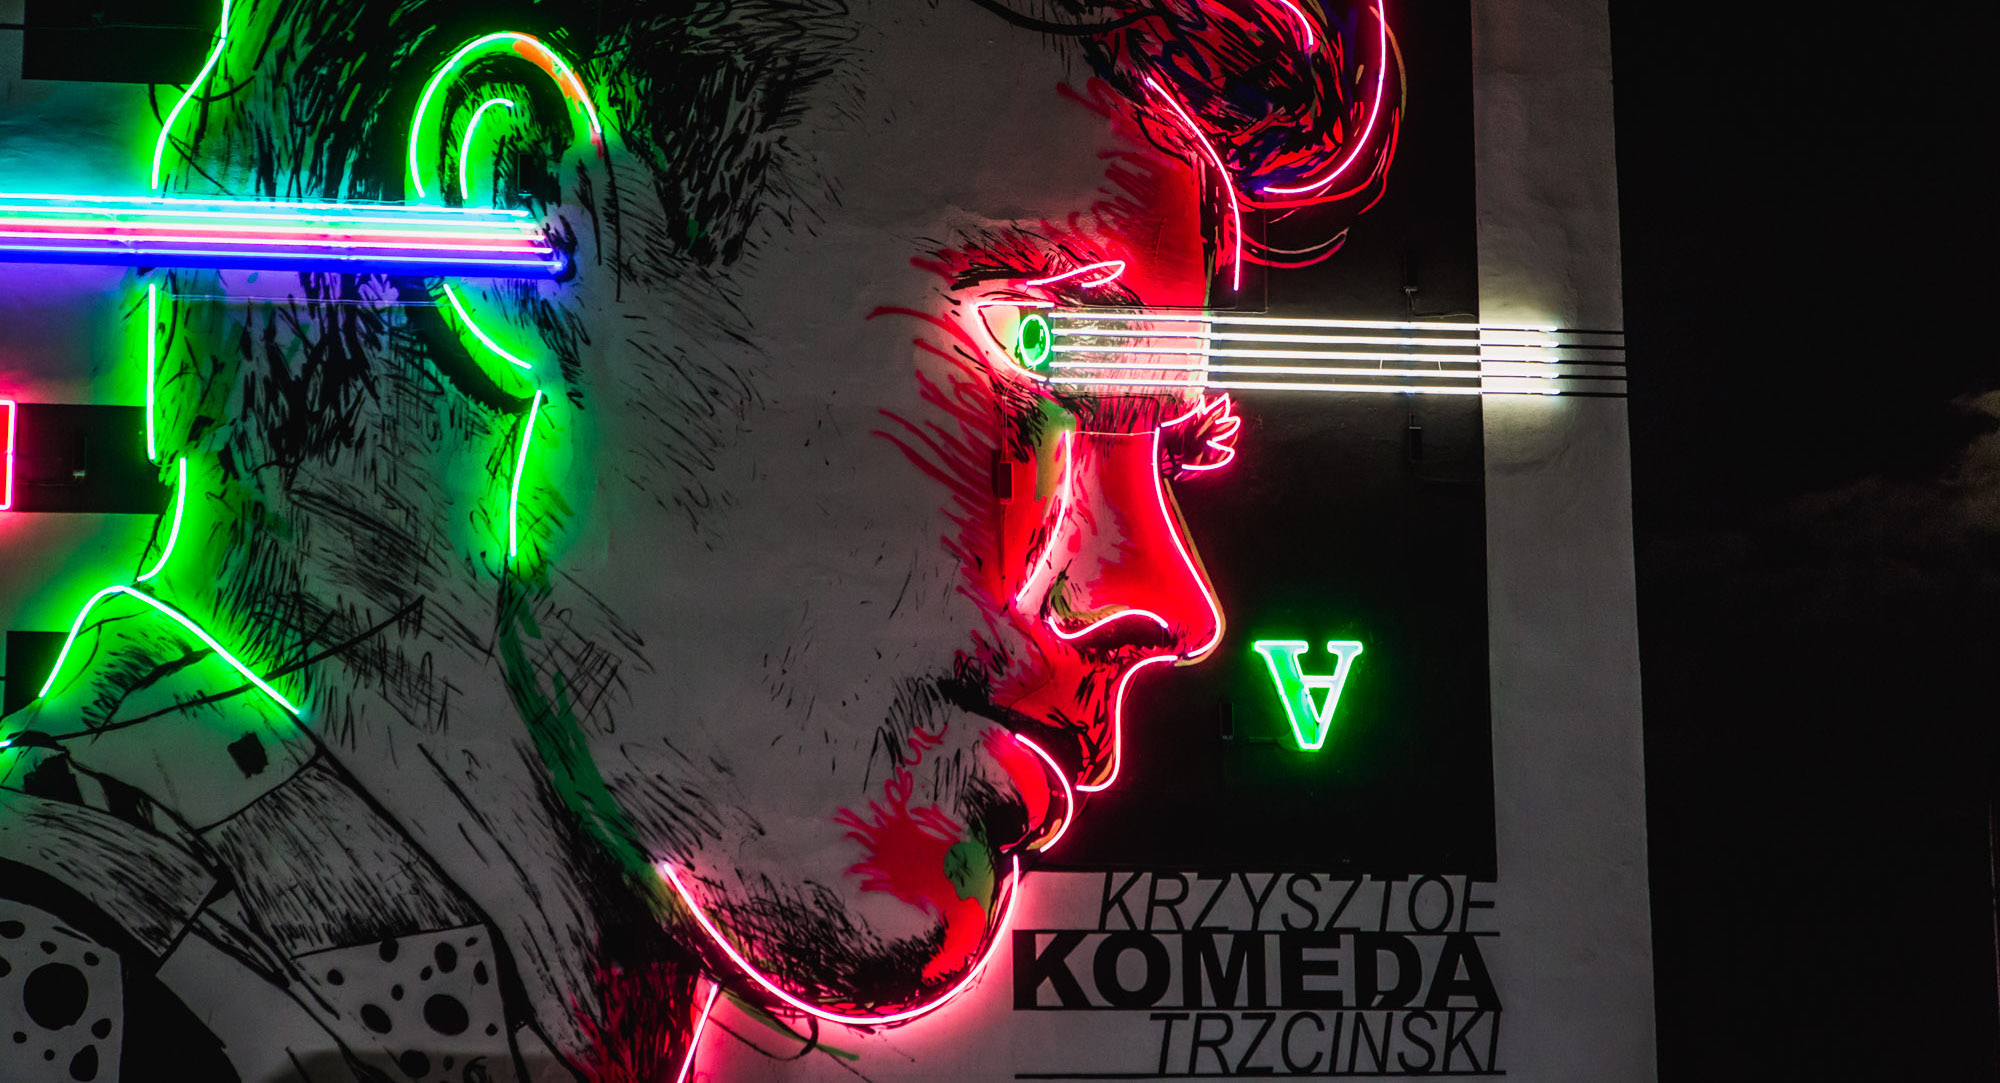 Neon Krzysztof Komeda (c) UM Ostrów